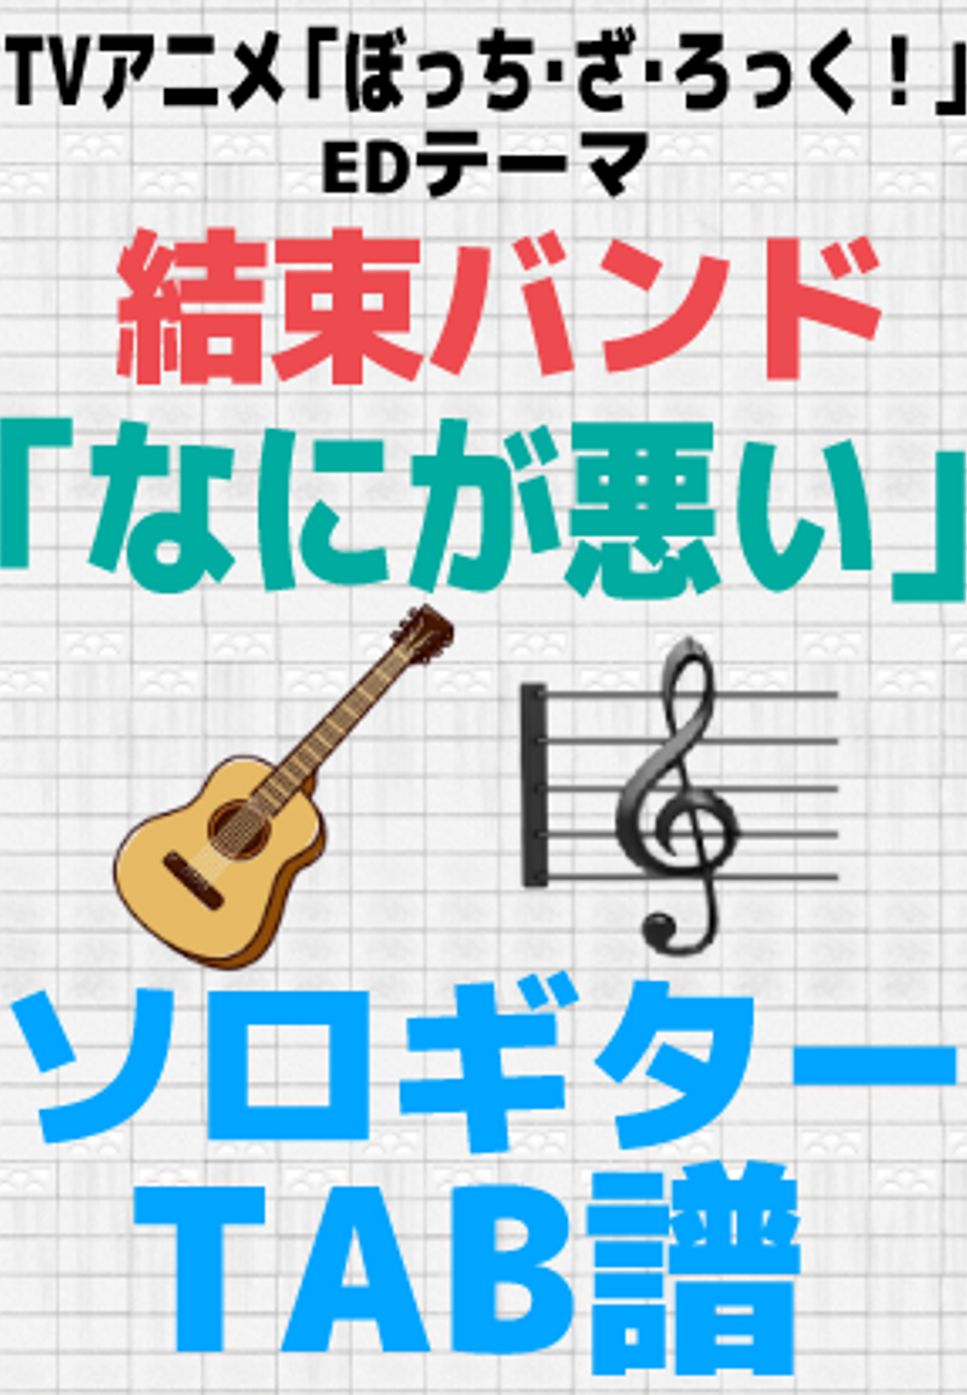 結束バンド - なにが悪い【ソロギターTAB譜】 by 伊田 マナブ